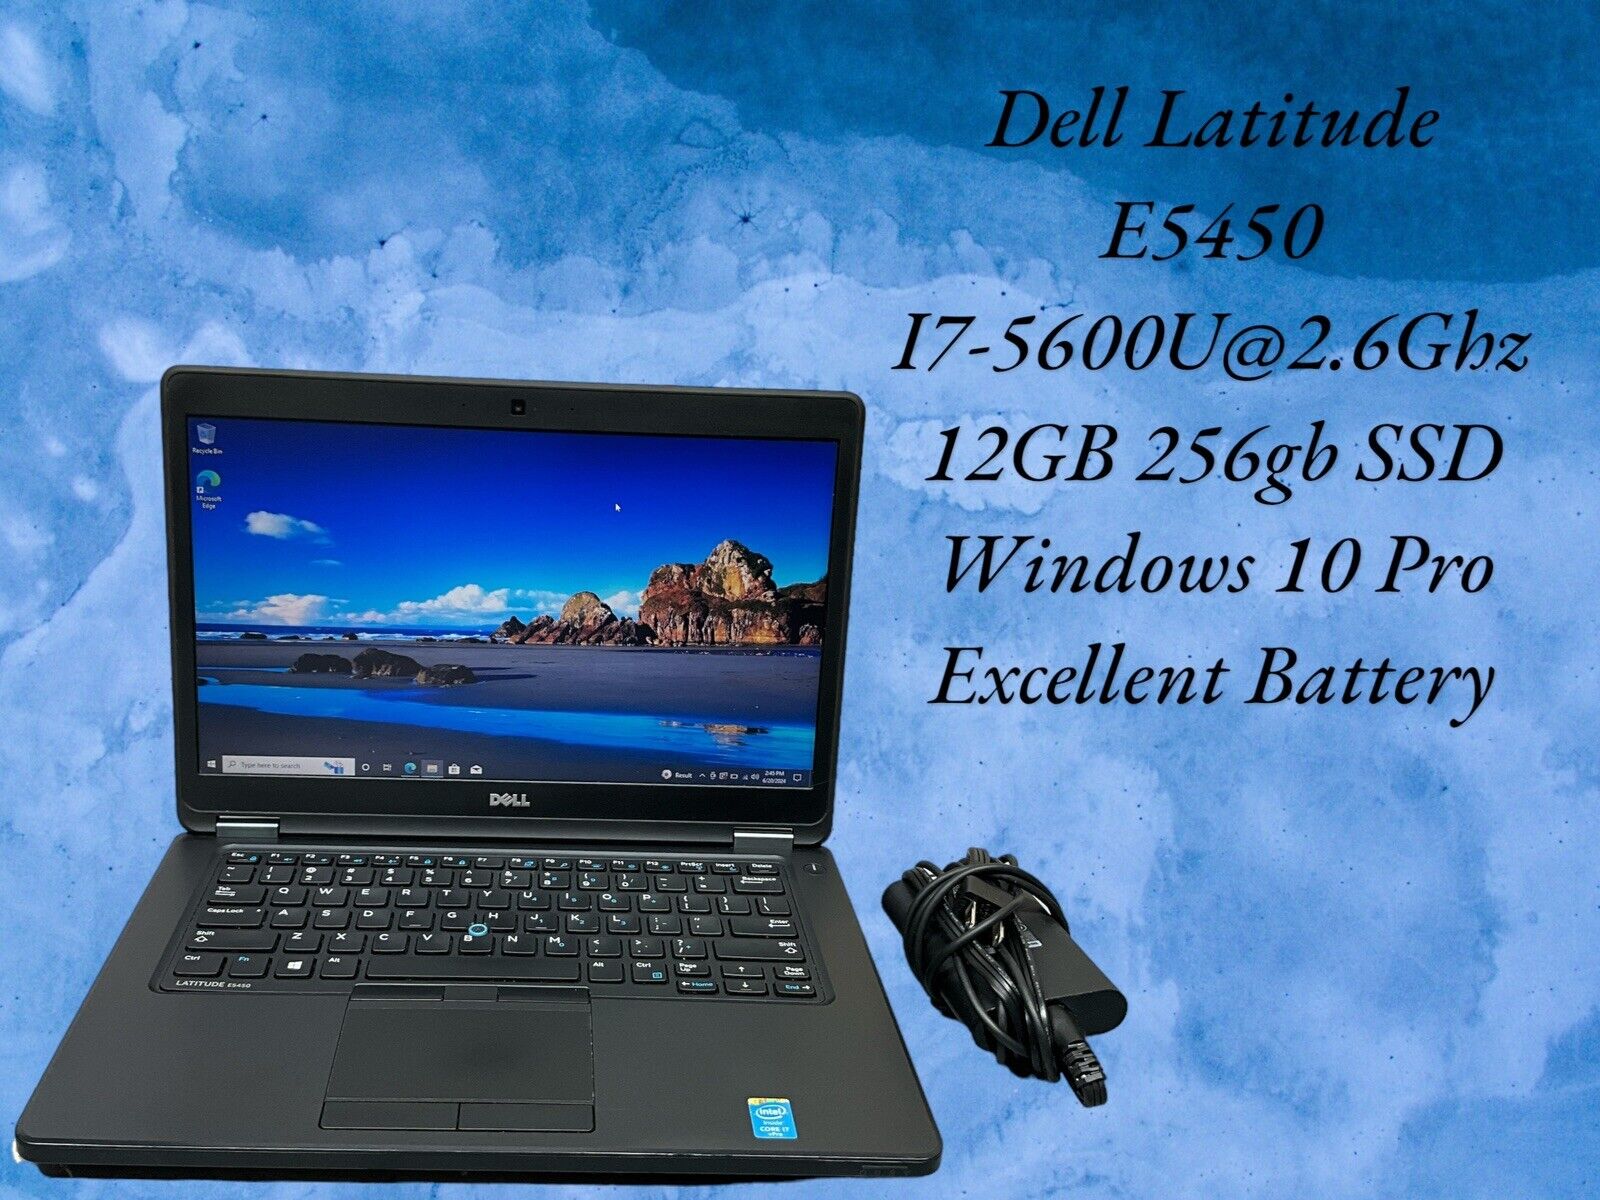 Dell Latitude E5450 i7-5600U 2.6GHz 12GB RAM 256GB SSD Win 10 30 Day Money Back